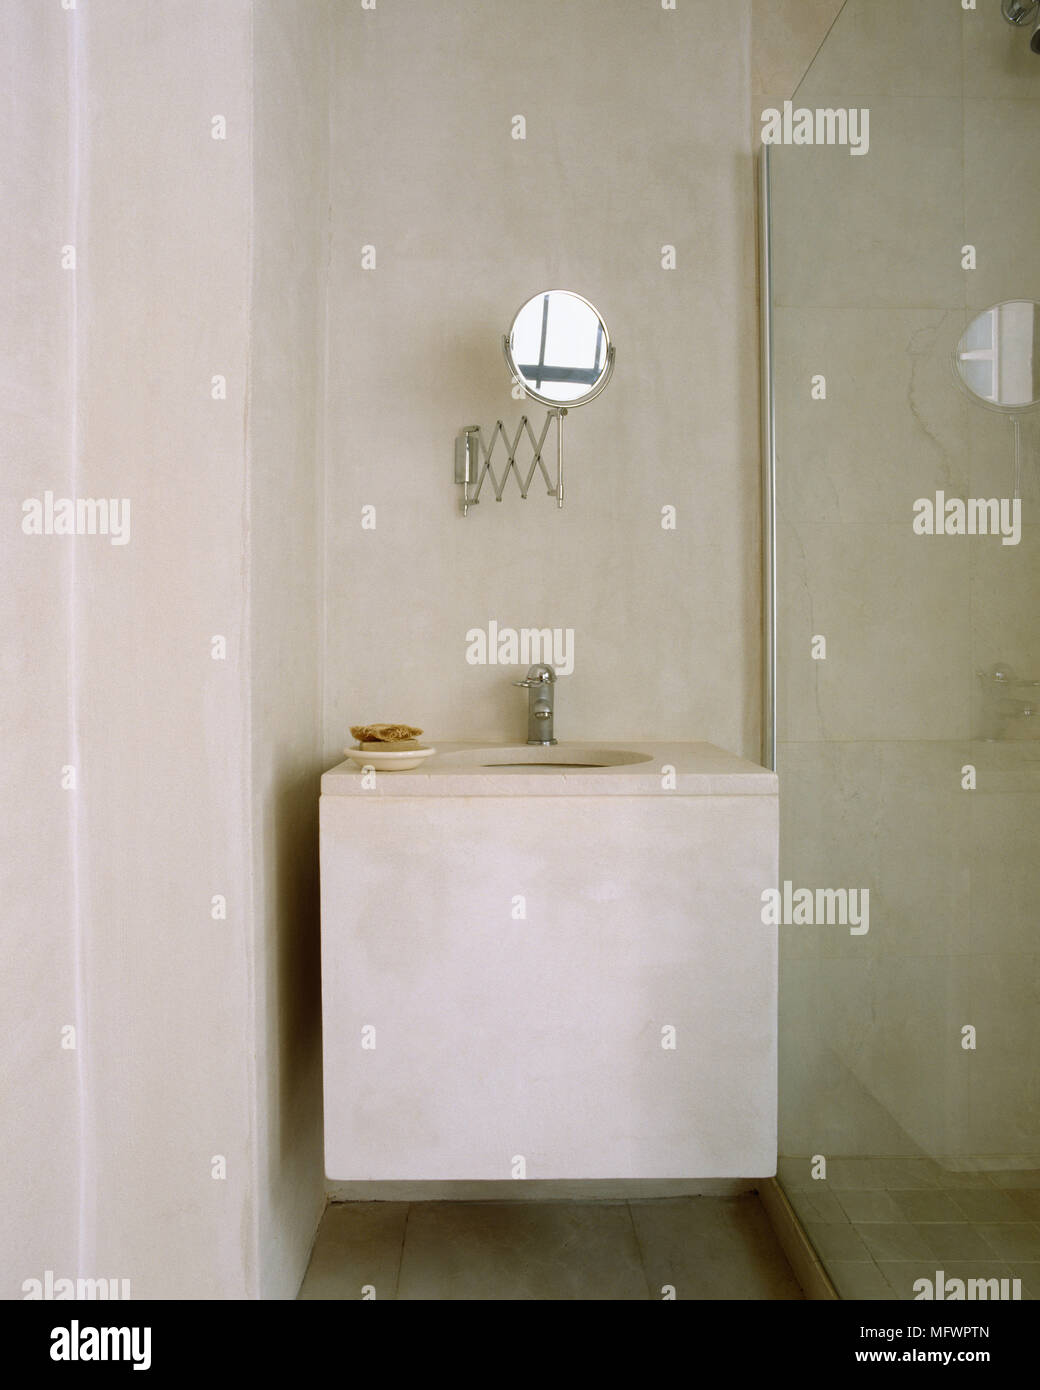 Minimalistische Badezimmer mit Rasierspiegel über Waschbecken neben Glas  Bildschirm Dusche montiert Stockfotografie - Alamy